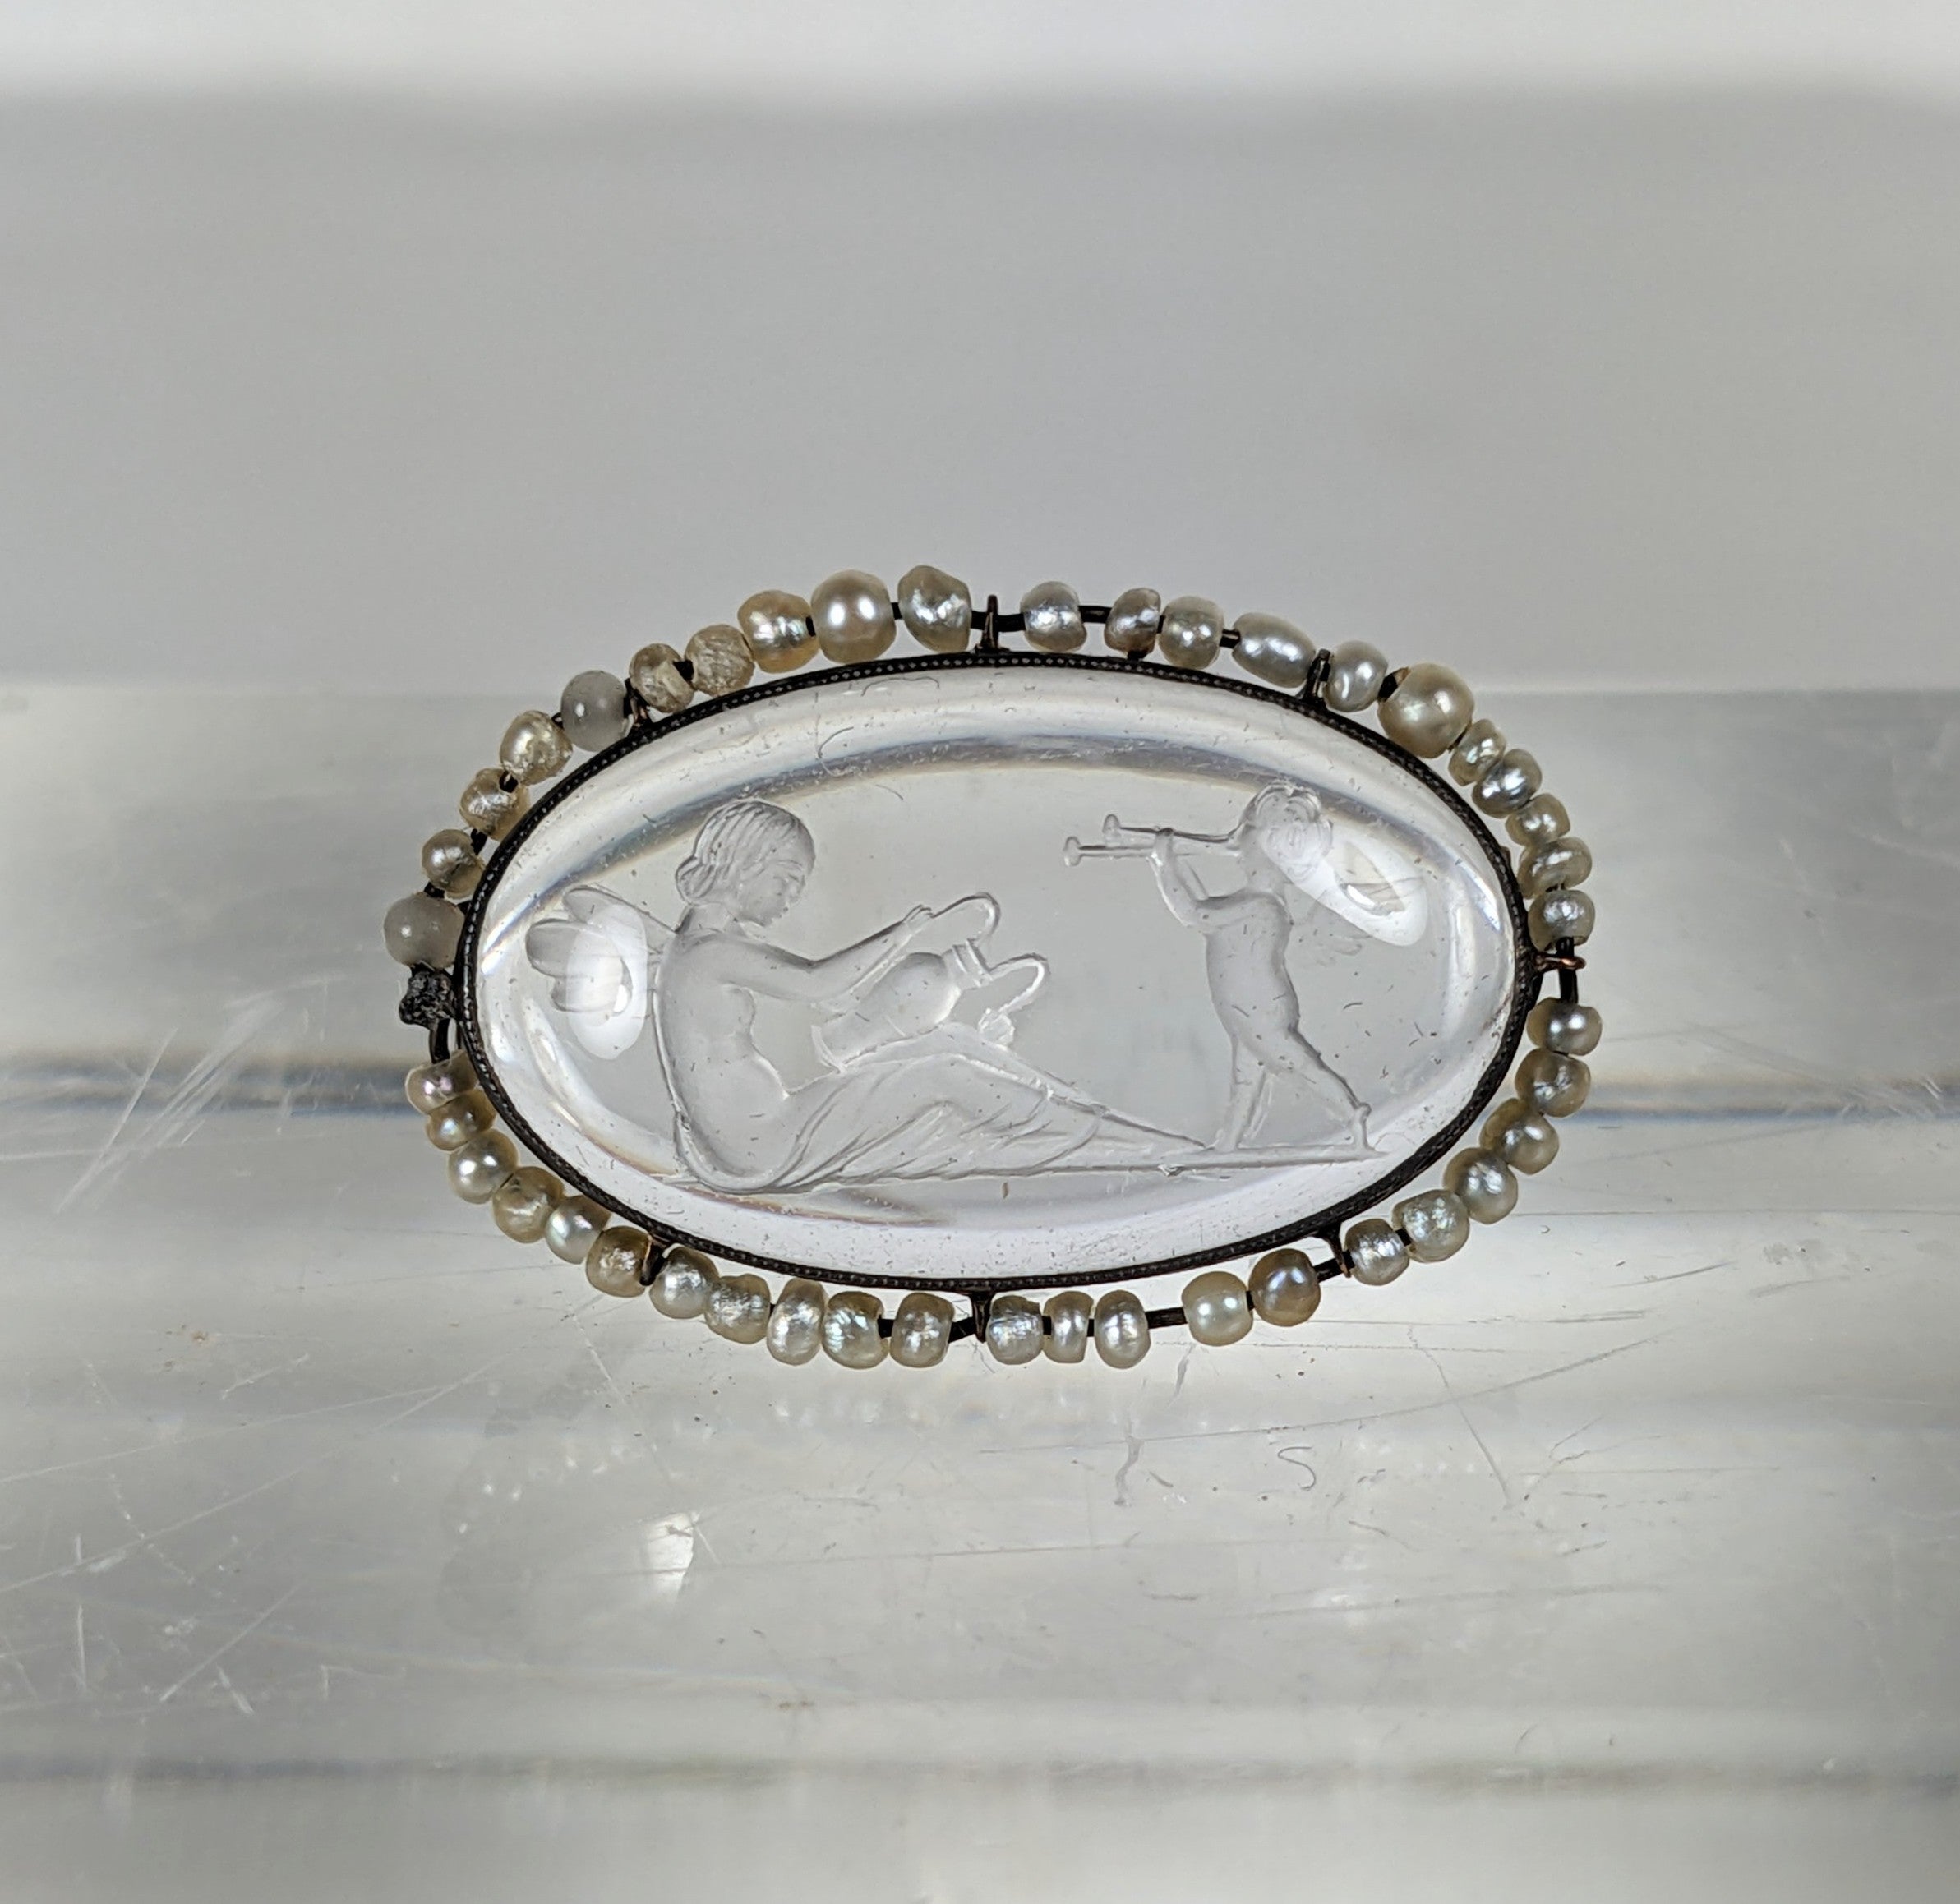 Petite mais charmante broche édouardienne en cristal de roche et perles de rocaille du début des années 1900. Serti en or 14k. Intaille sculptée à la main d'un chérubin chantant la sérénade à un personnage assis ressemblant à une fée. Des perles de